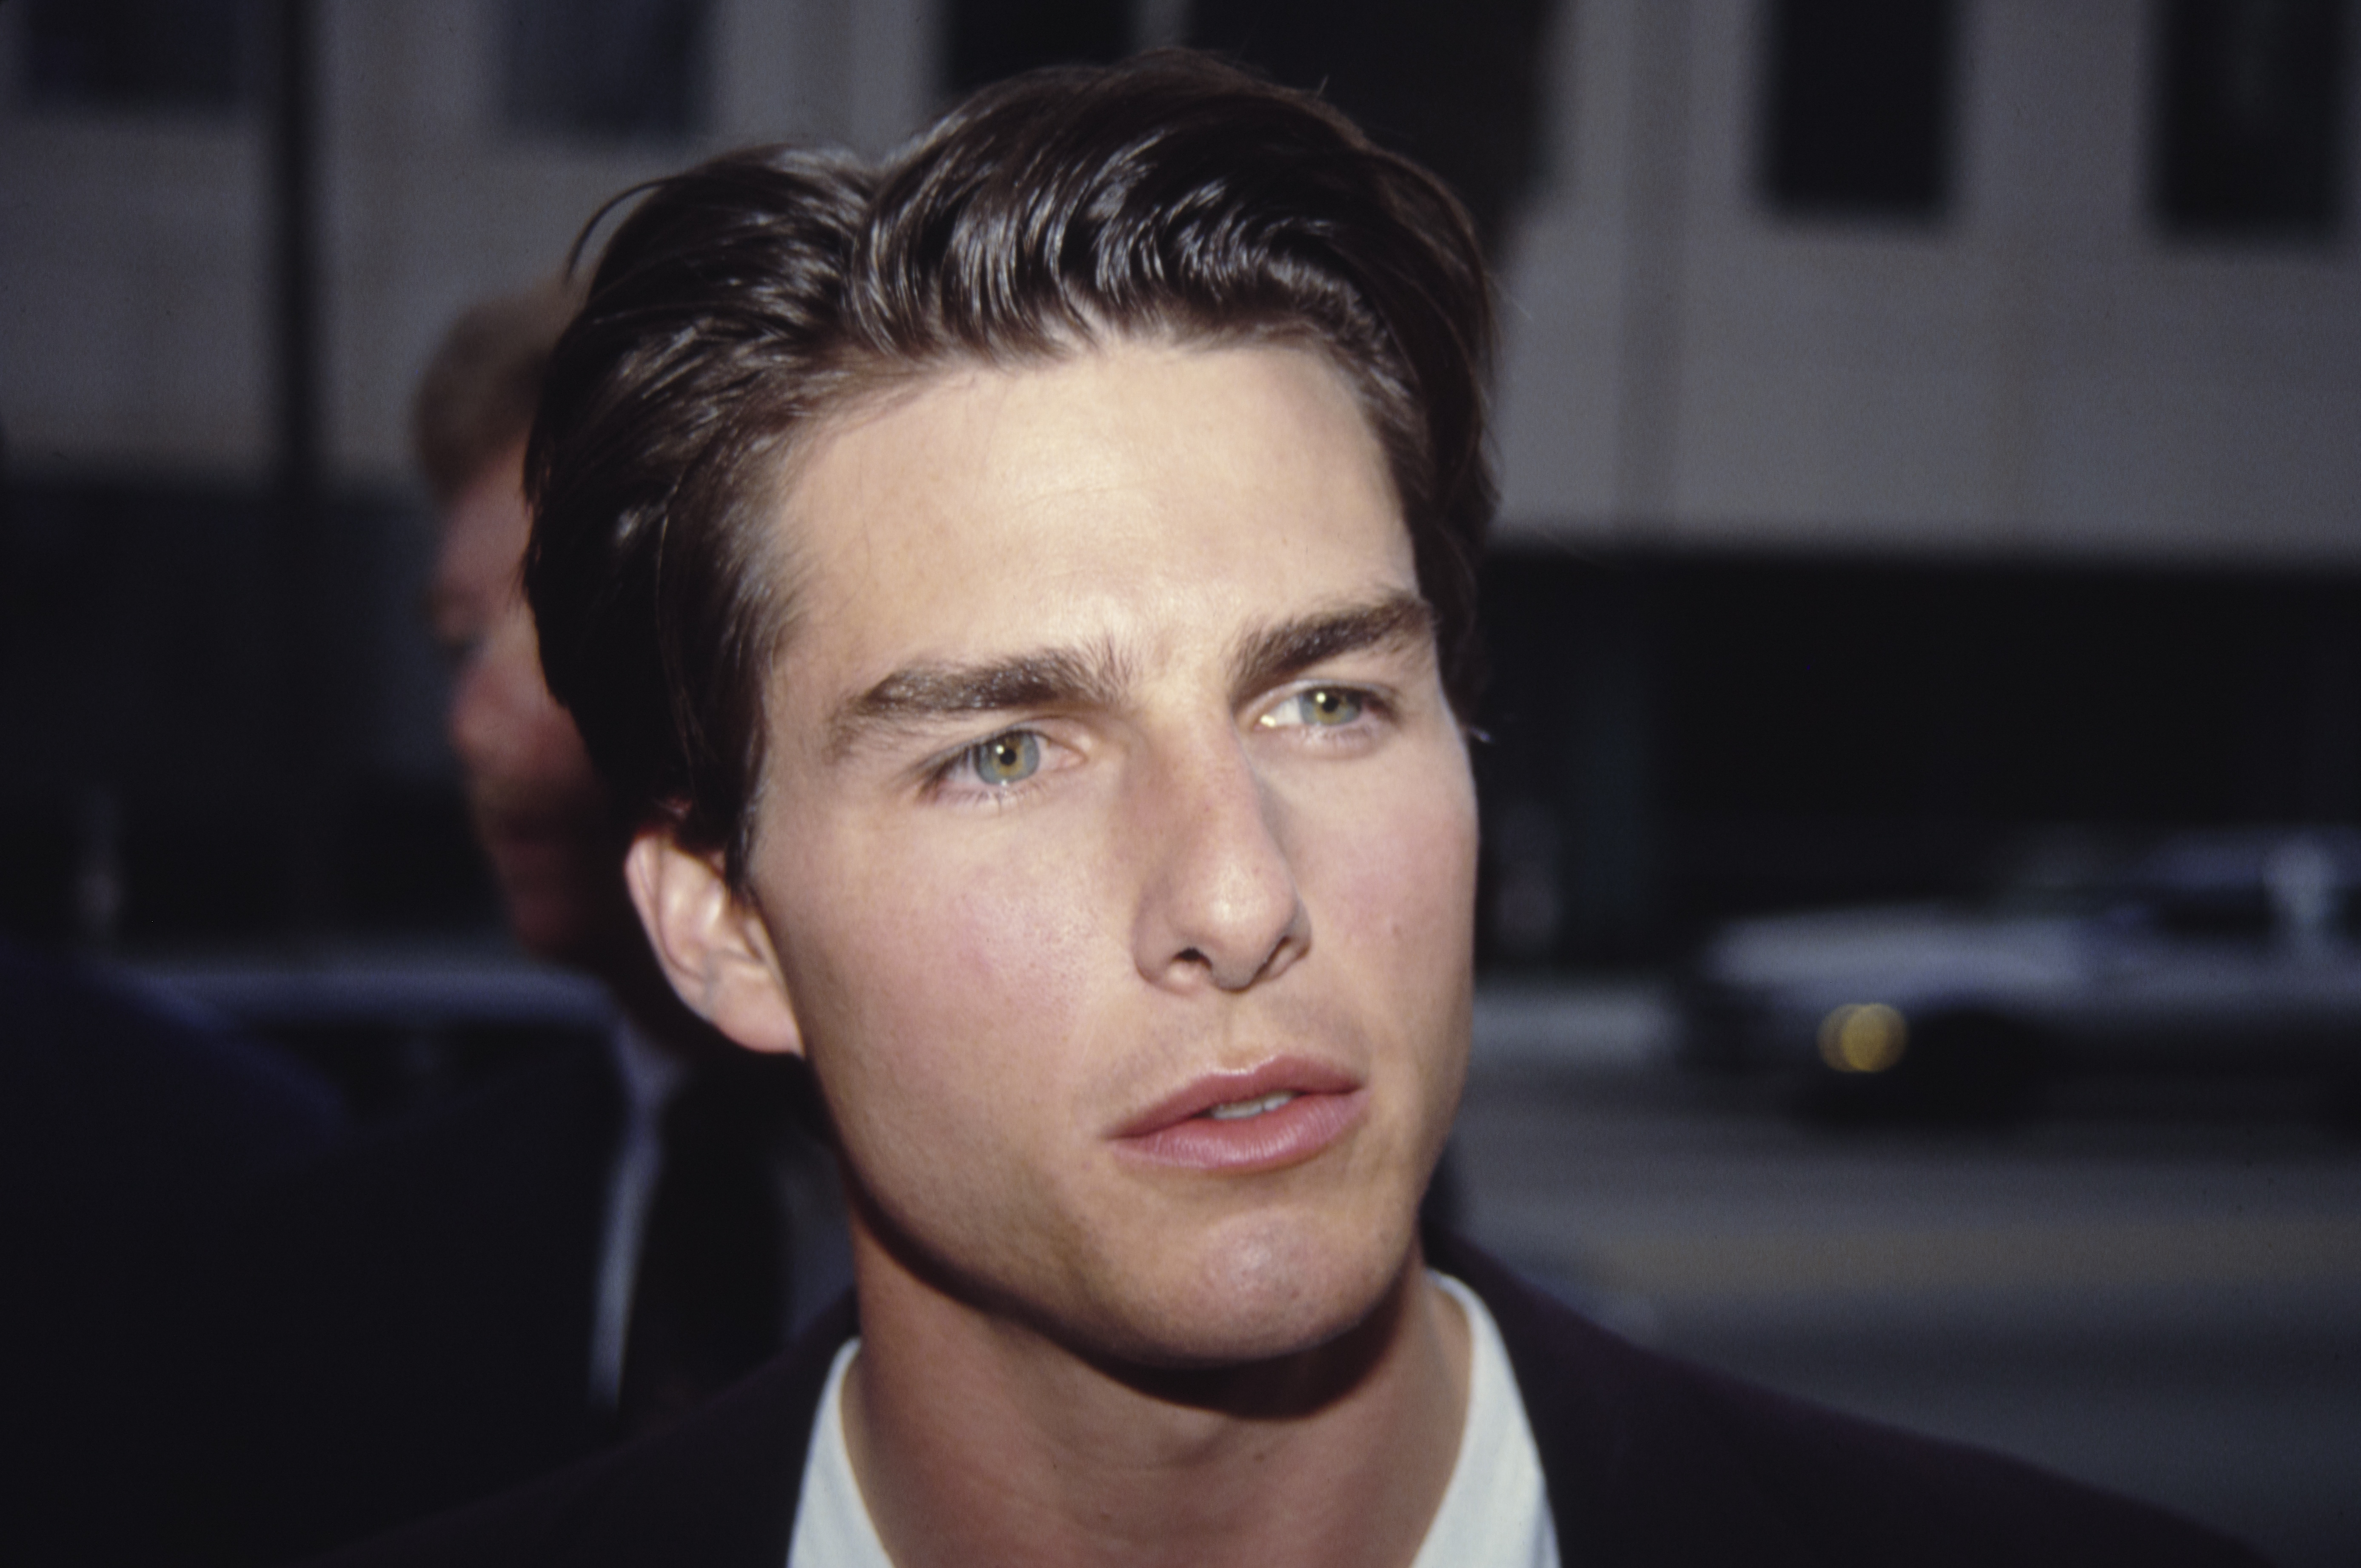 Tom Cruise asistiendo a un evento en la década de 1980. | Foto: Getty Images